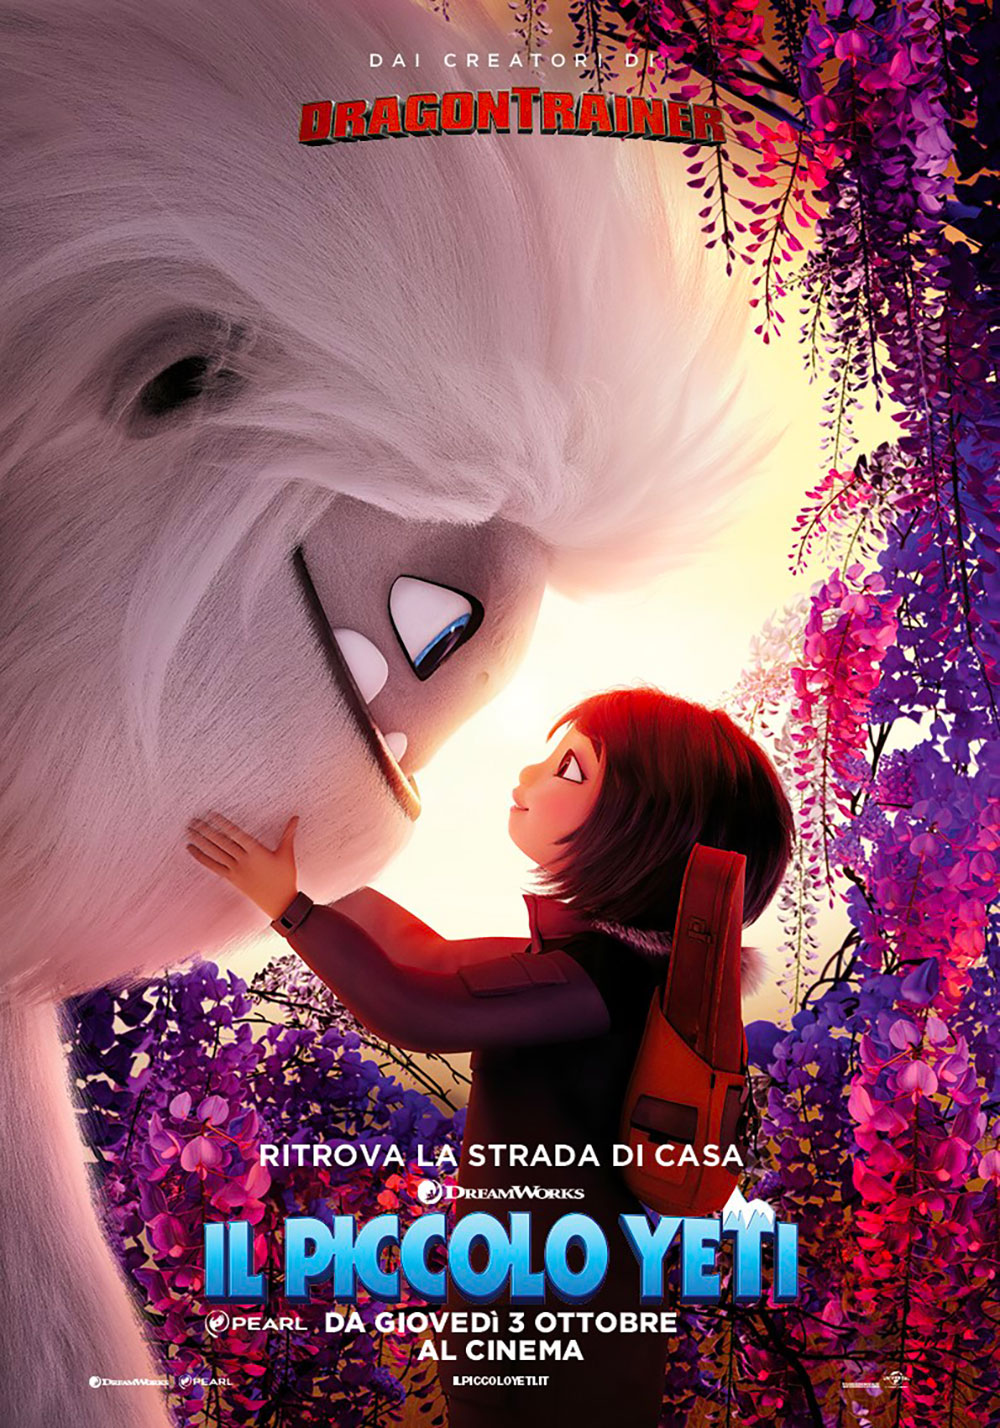  Dall'articolo: Il Piccolo Yeti, il poster italiano del film.